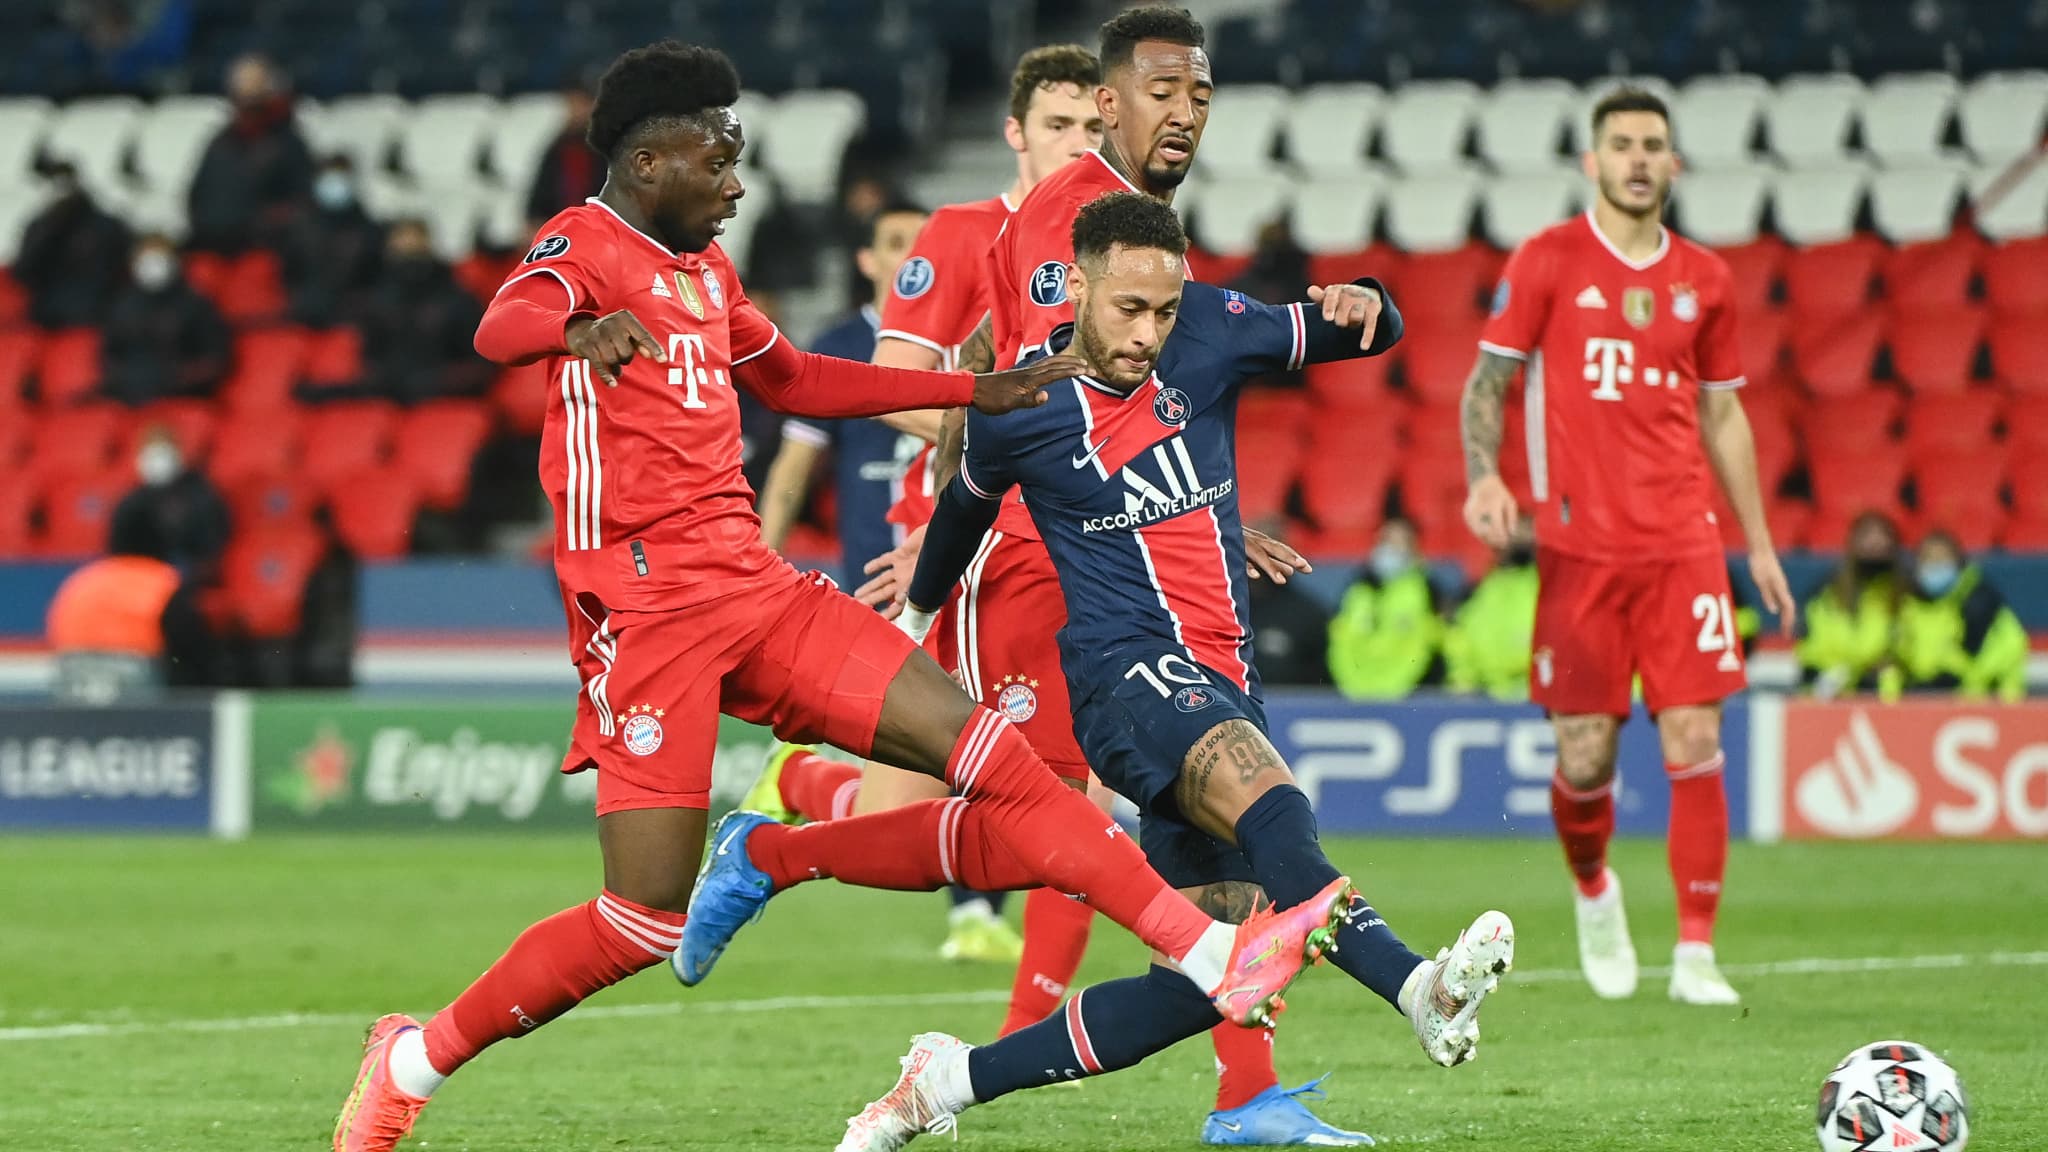 Les 5 raisons pour lesquelles le PSG va perdre contre le Bayern Munich ce soir